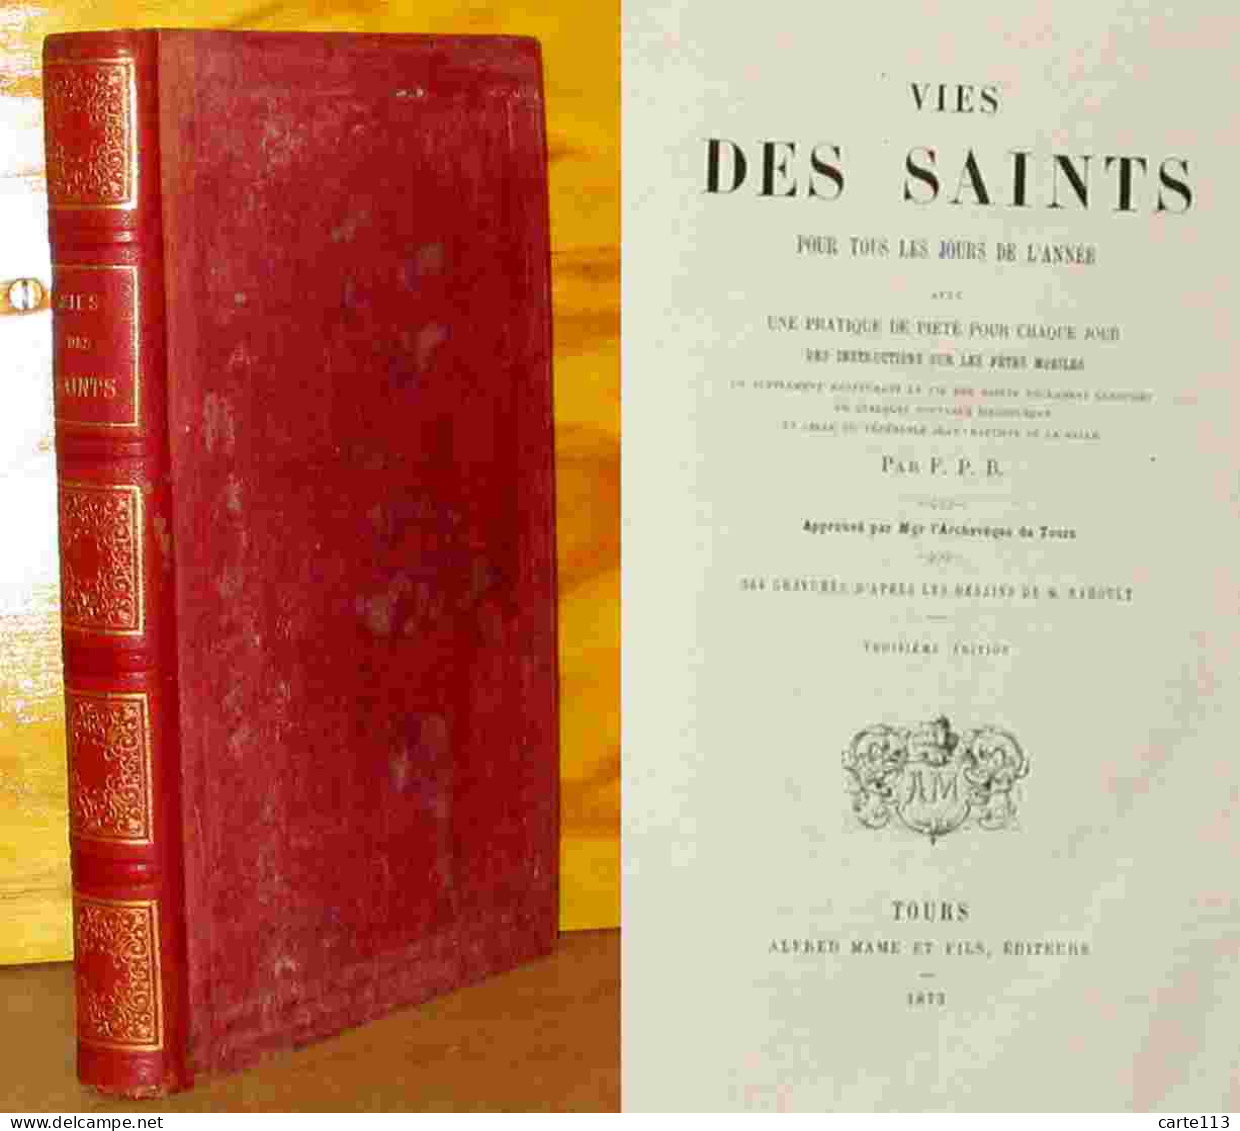 BRANSIET Mathieu - Par F. P. B. - VIES DES SAINTS - 1801-1900